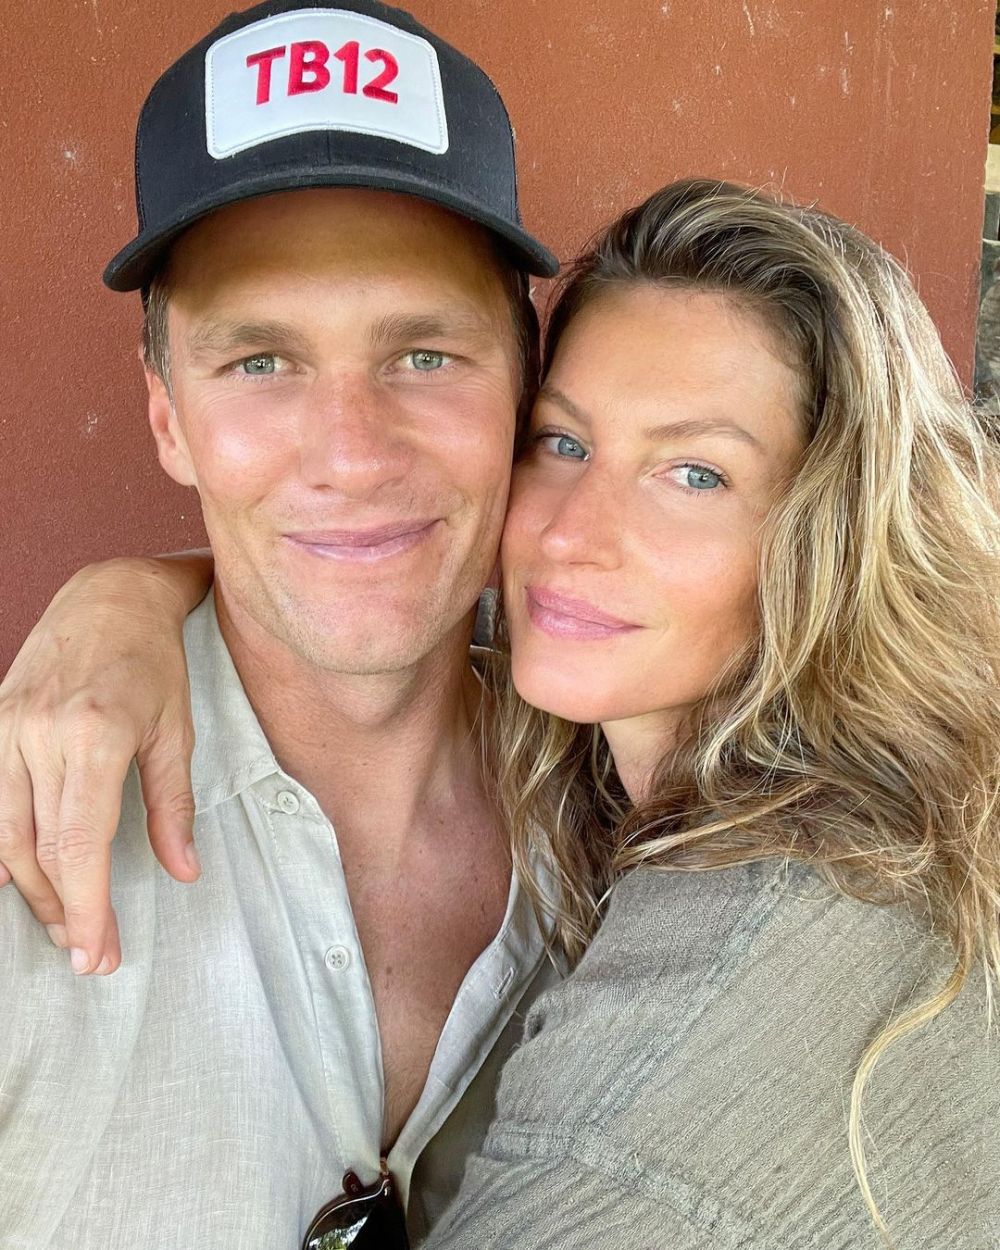 Tom Brady a divorțat de supermodelul Gisele Bundchen după 13 ani de căsnicie! Mesajul postat de starul din NFL_7